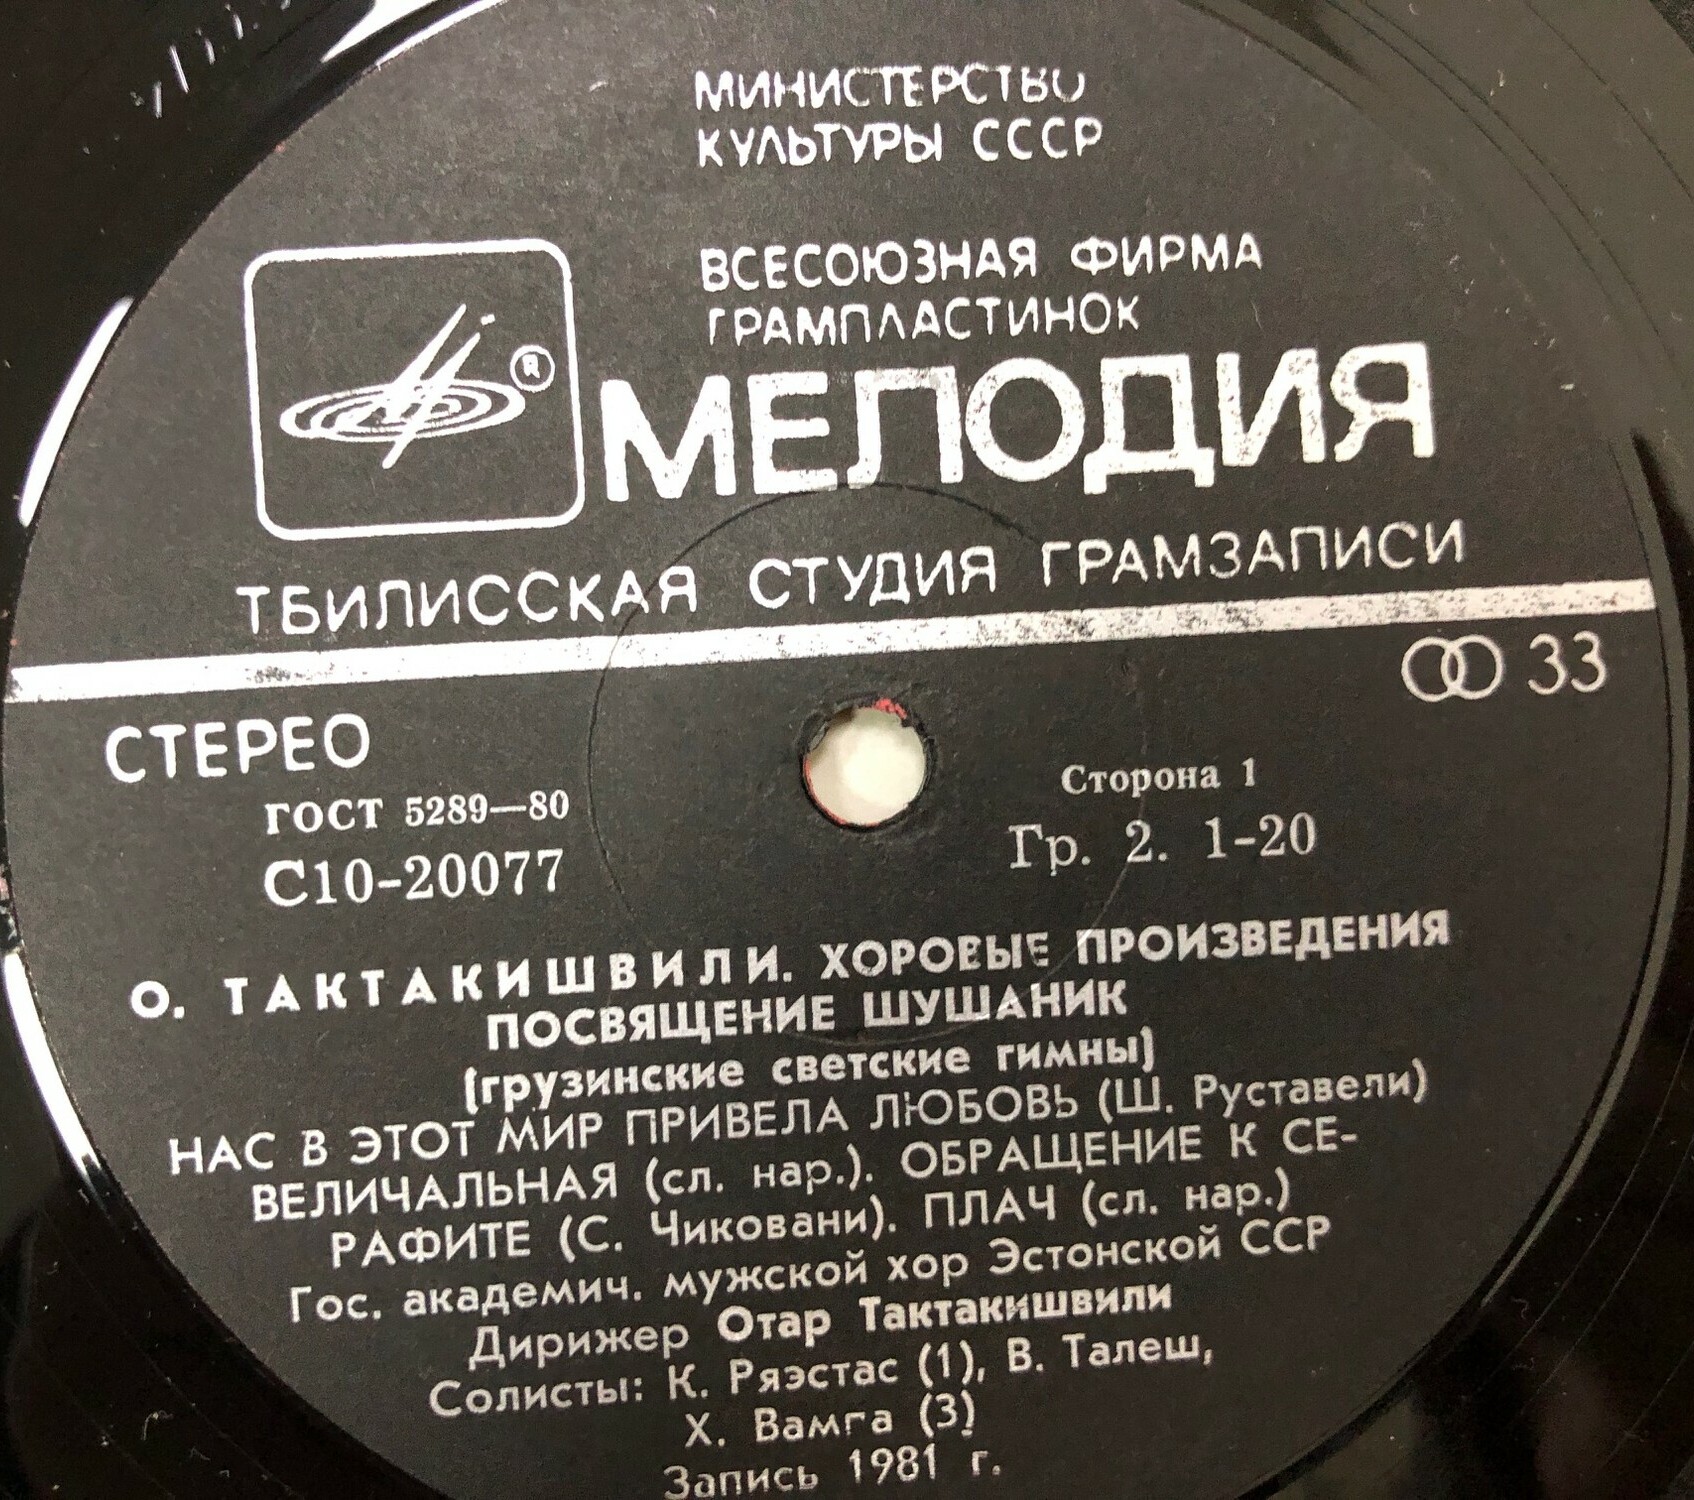 О. ТАКТАКИШВИЛИ (1924): Хоровые произведения